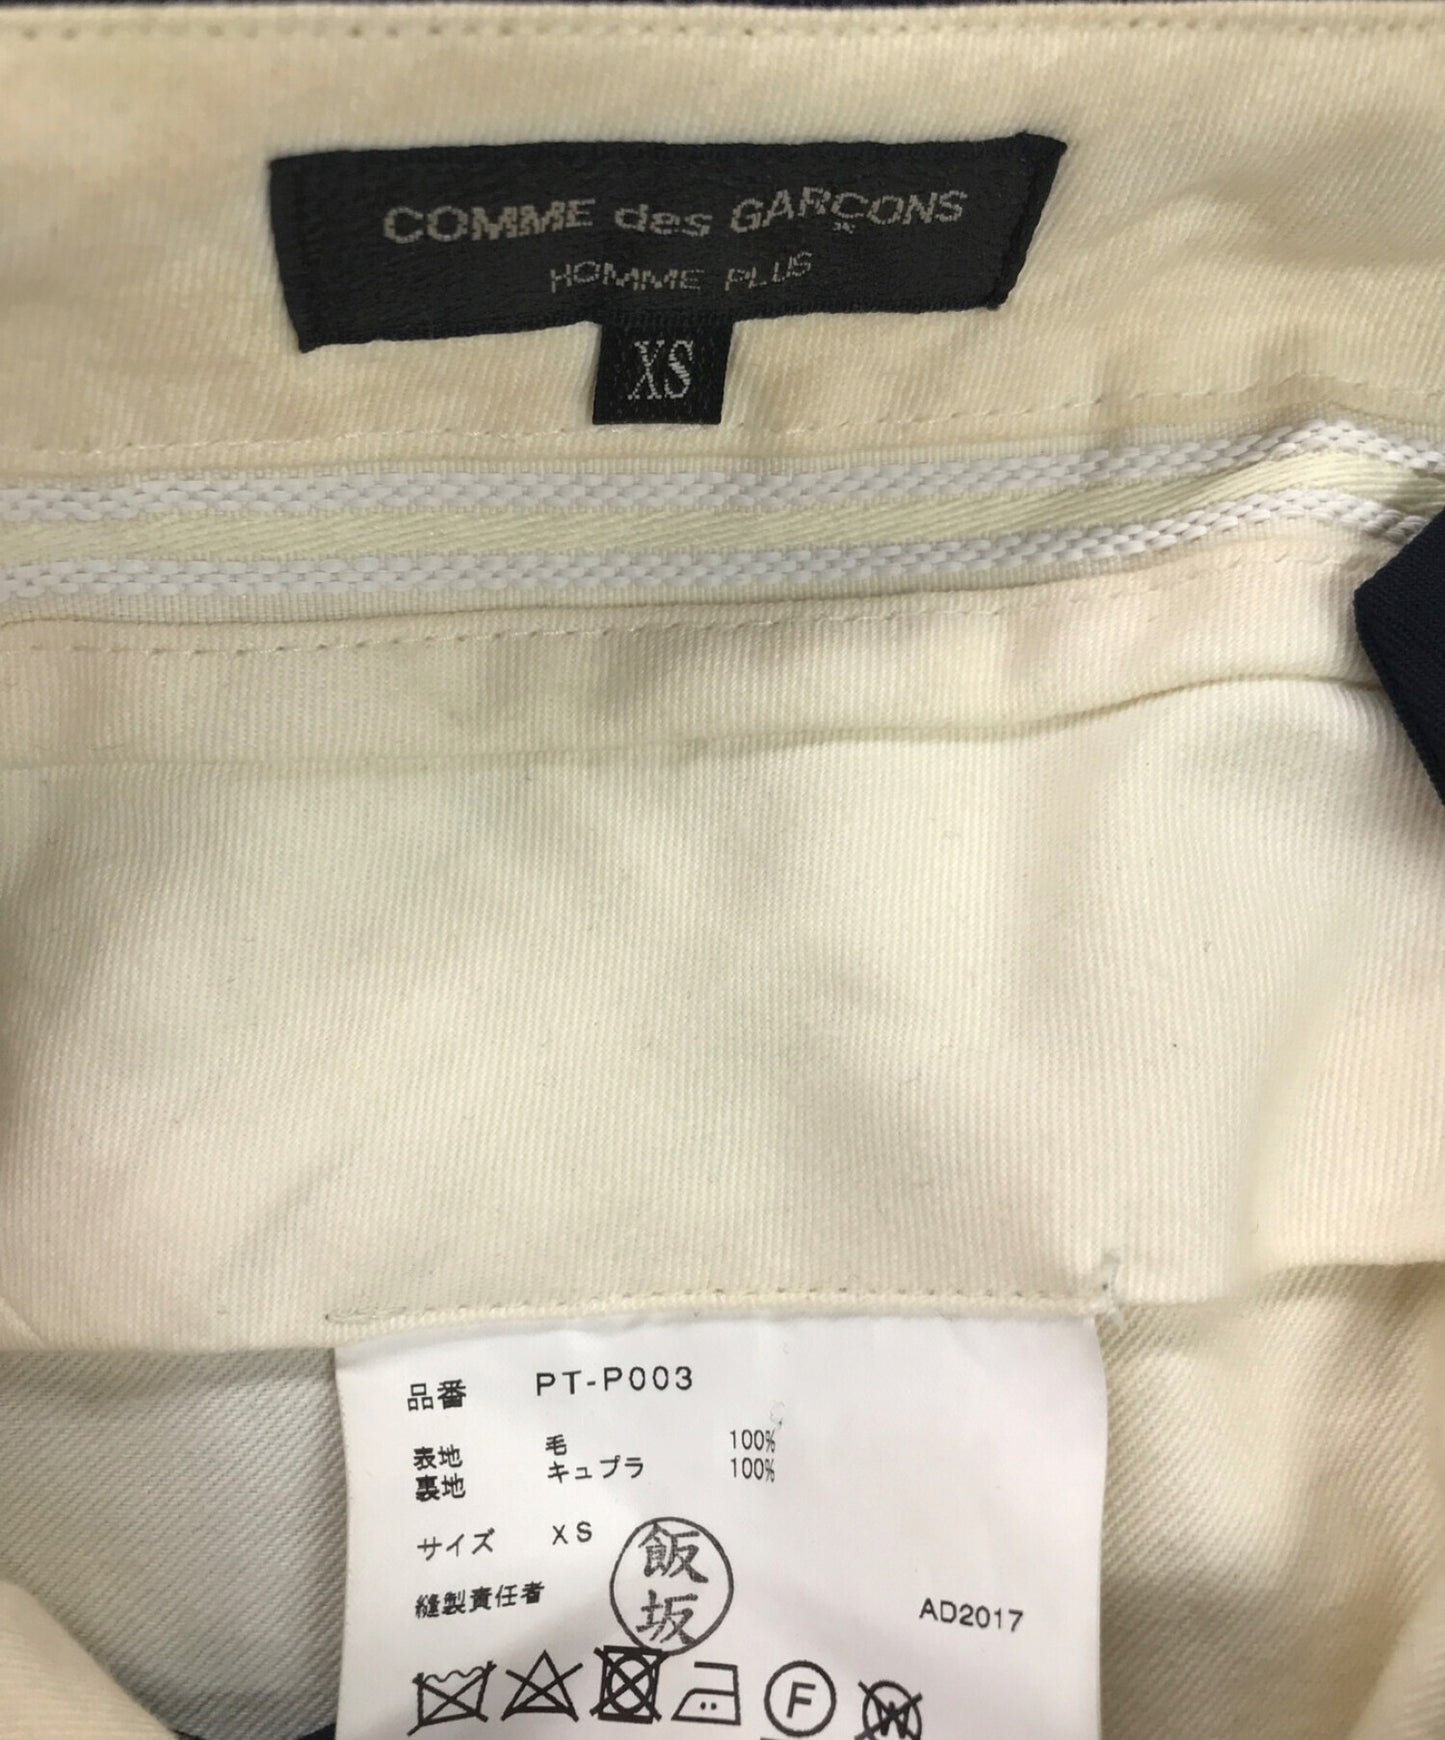 [Pre-owned] COMME des GARCONS HOMME PLUS tiger-striped pants PT-P003